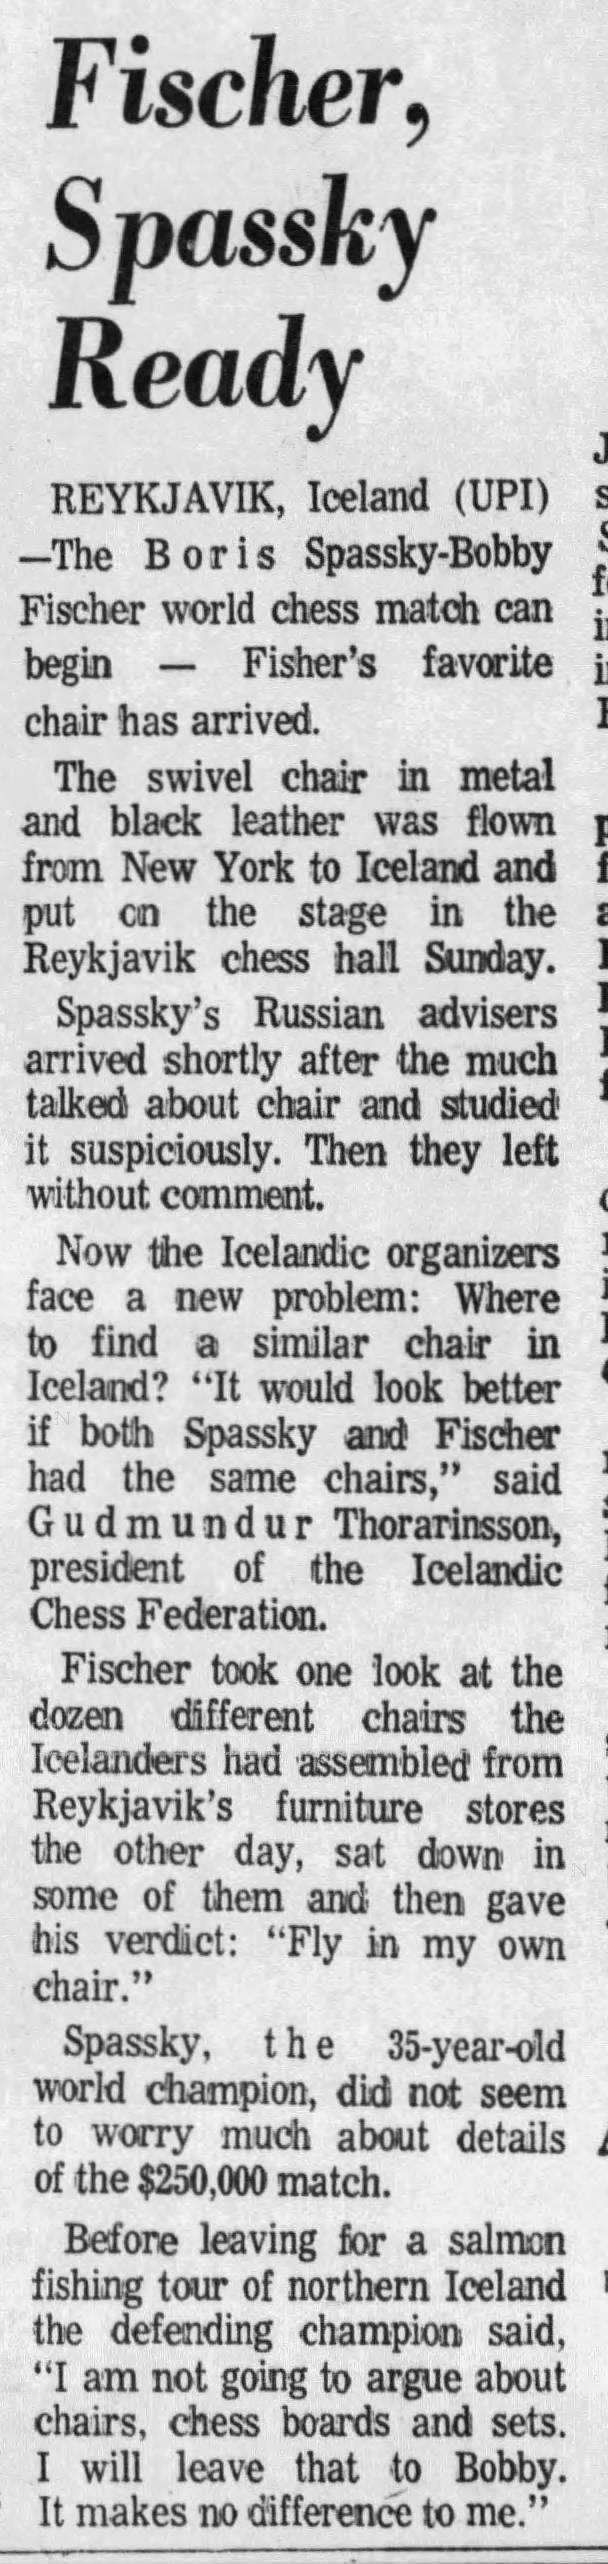 Fischer, Spassky Ready